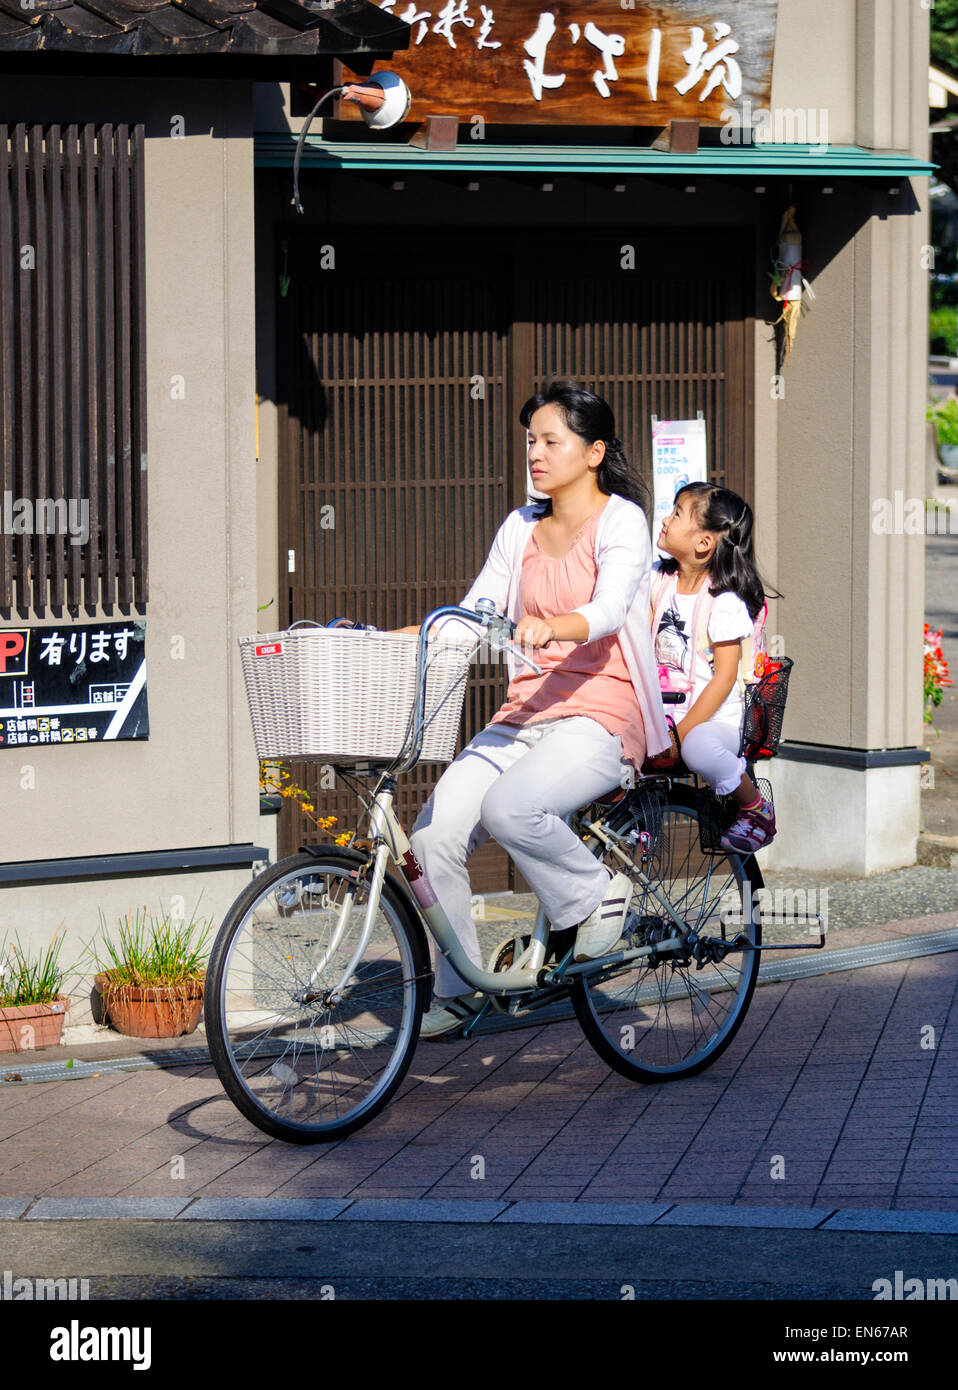 Es común ver a dos personas que viajaban en una sola bicicleta en Japón - especialmente a las madres y los niños pequeños. Madre japonesa & hijo; su hija, bicicleta. Foto de stock